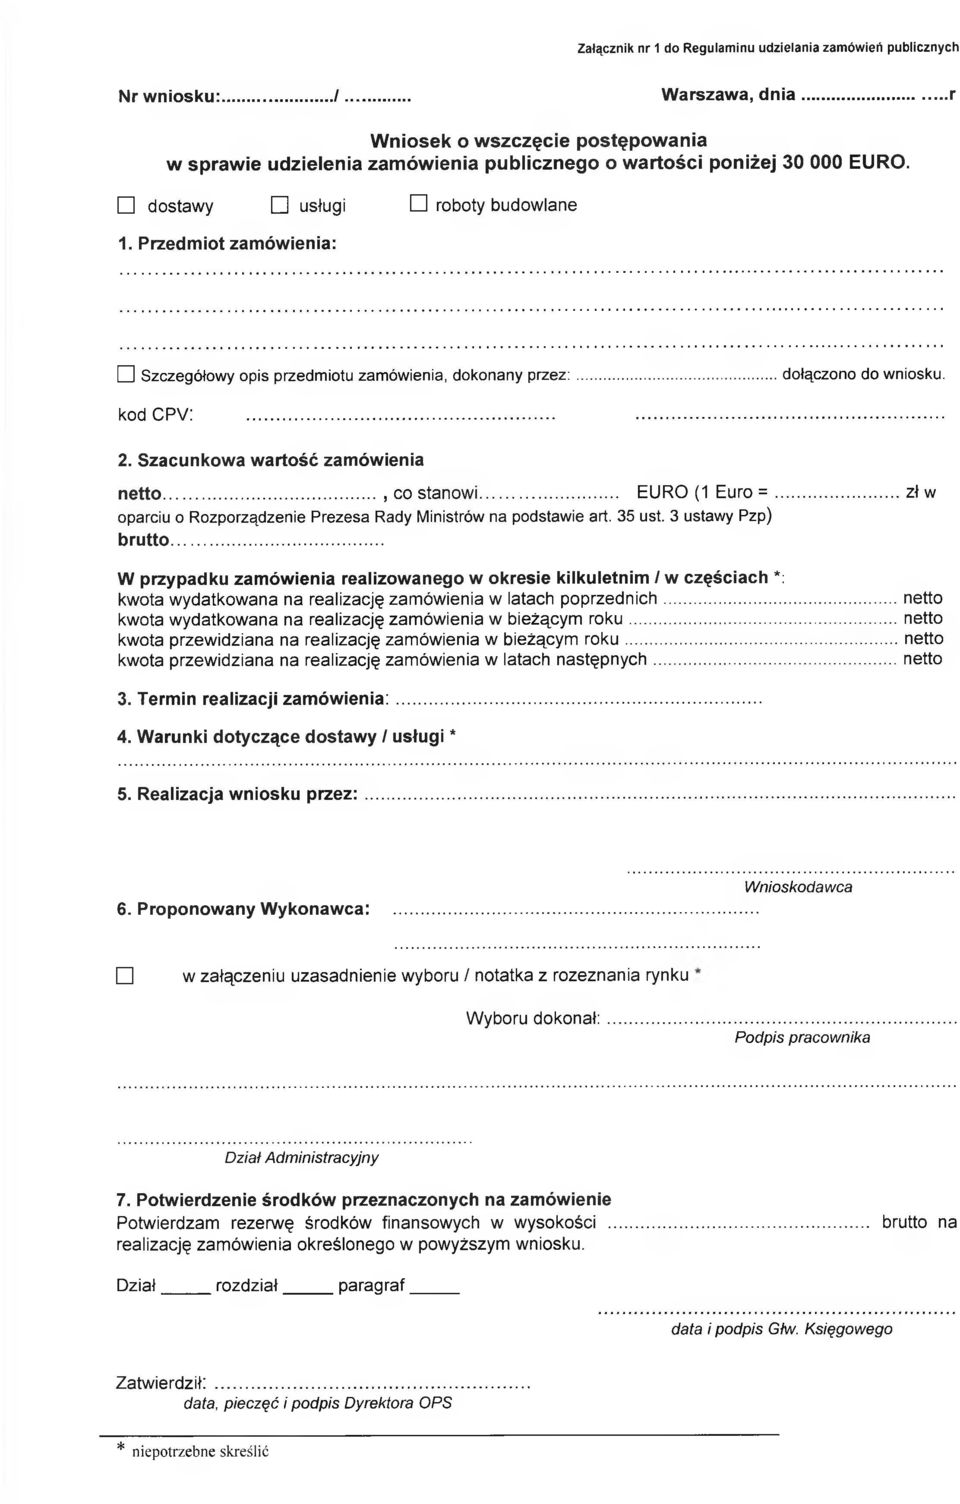 Przedmiot zamówienia: dl Szczegółowy opis przedmiotu zamówienia, dokonany przez:...dołączono do wniosku. kod CPV:...... 2. Szacunkowa wartość zamówienia netto..., co stanowi... EURO (1 Euro =.